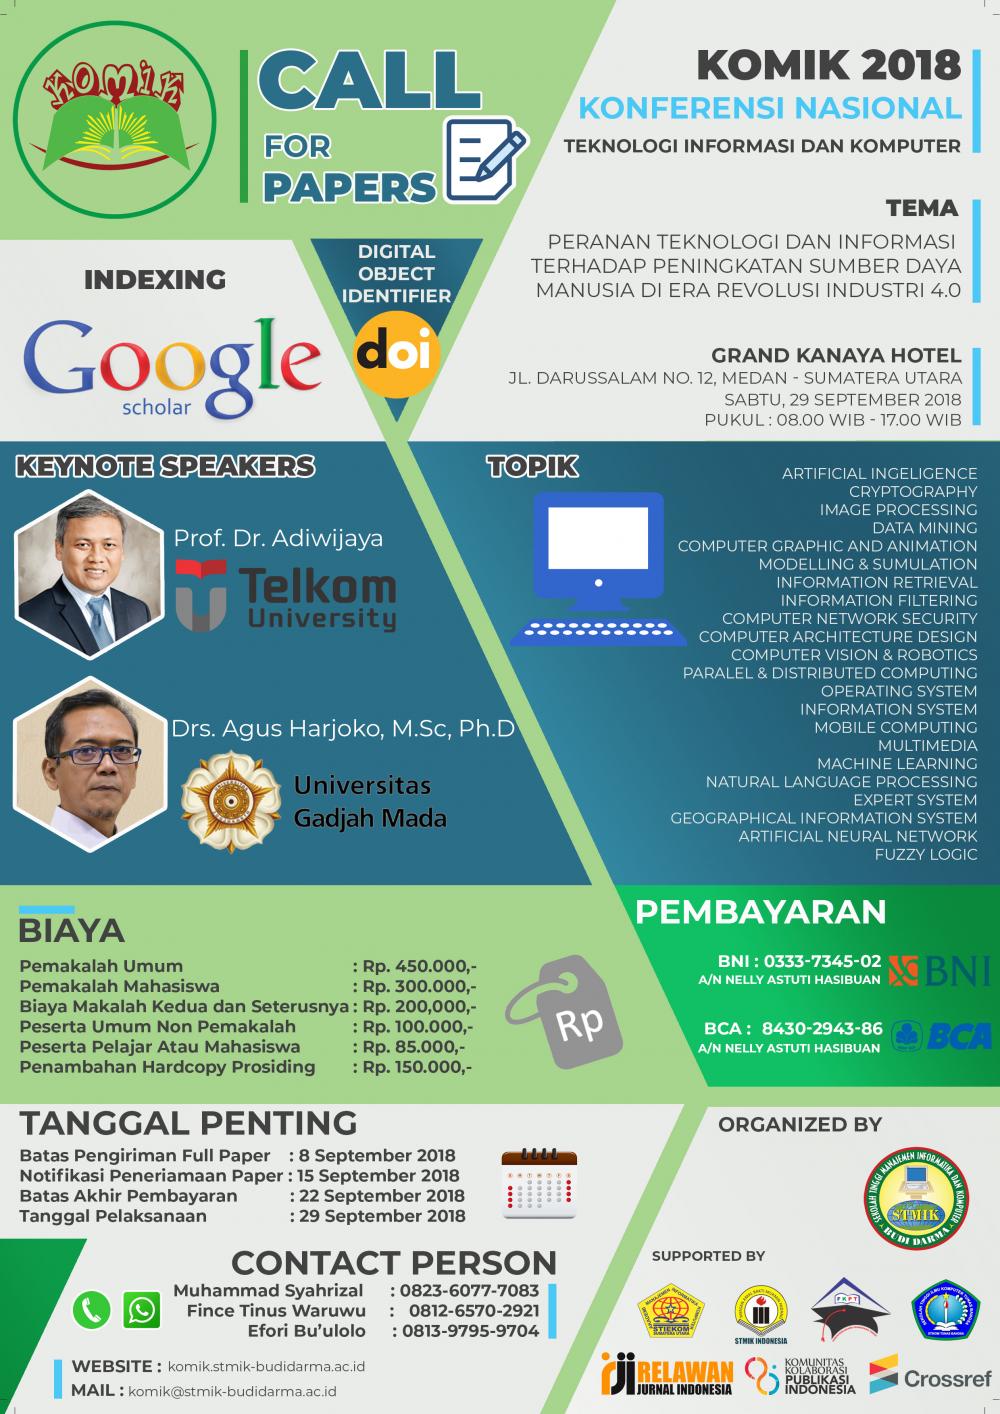 Konferensi Nasional Teknologi Informasi dan Komputer (KOMIK) 2018